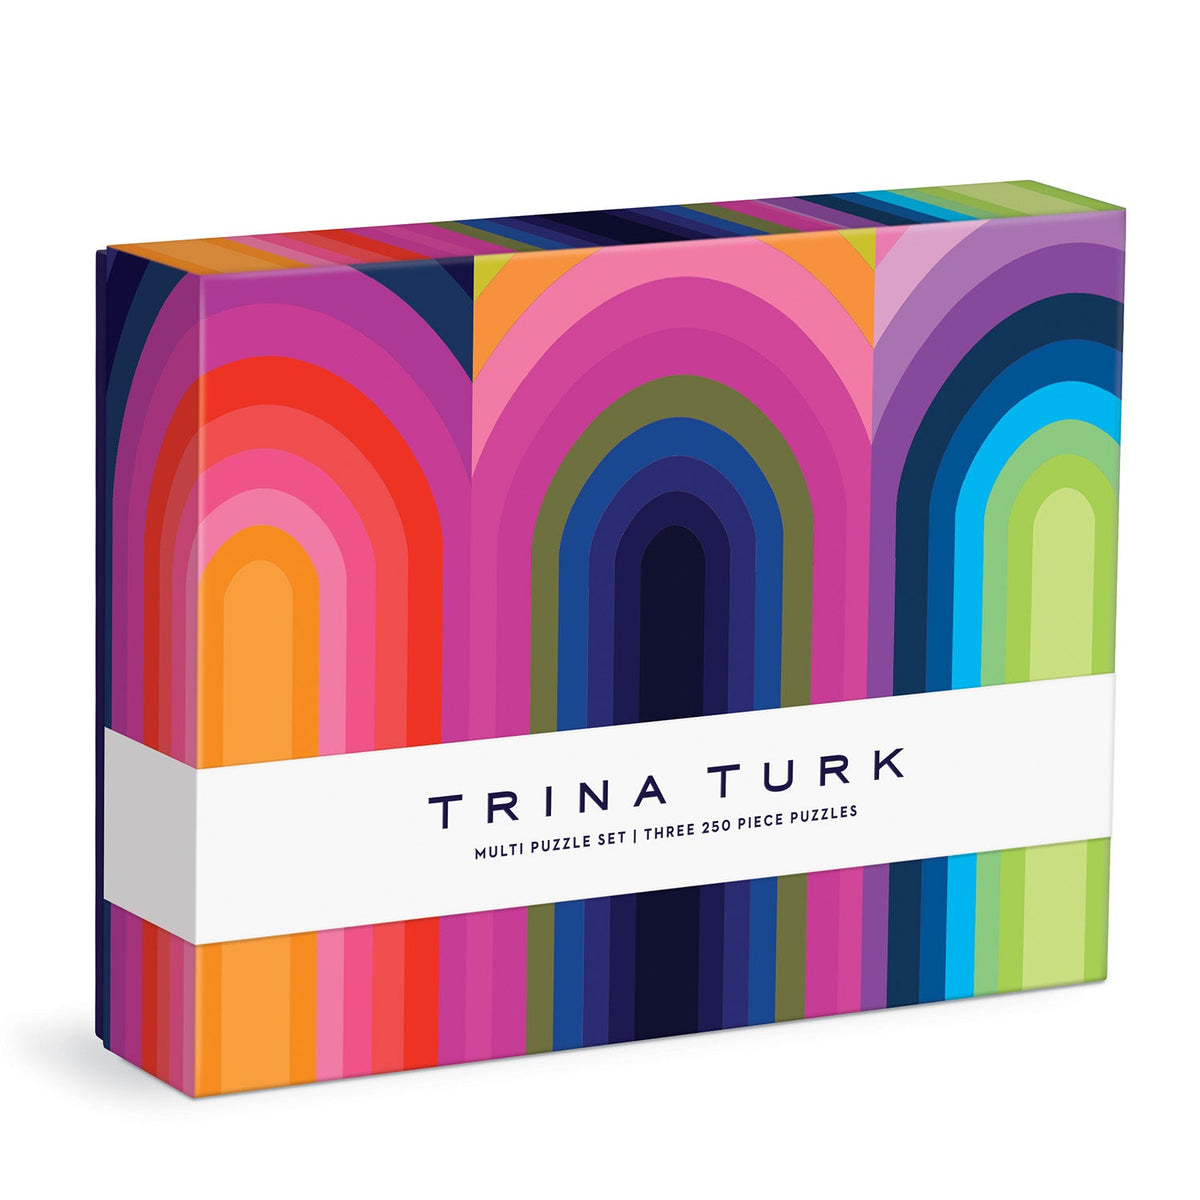 Trina Turk 250 Piece Multi Puzzle Set